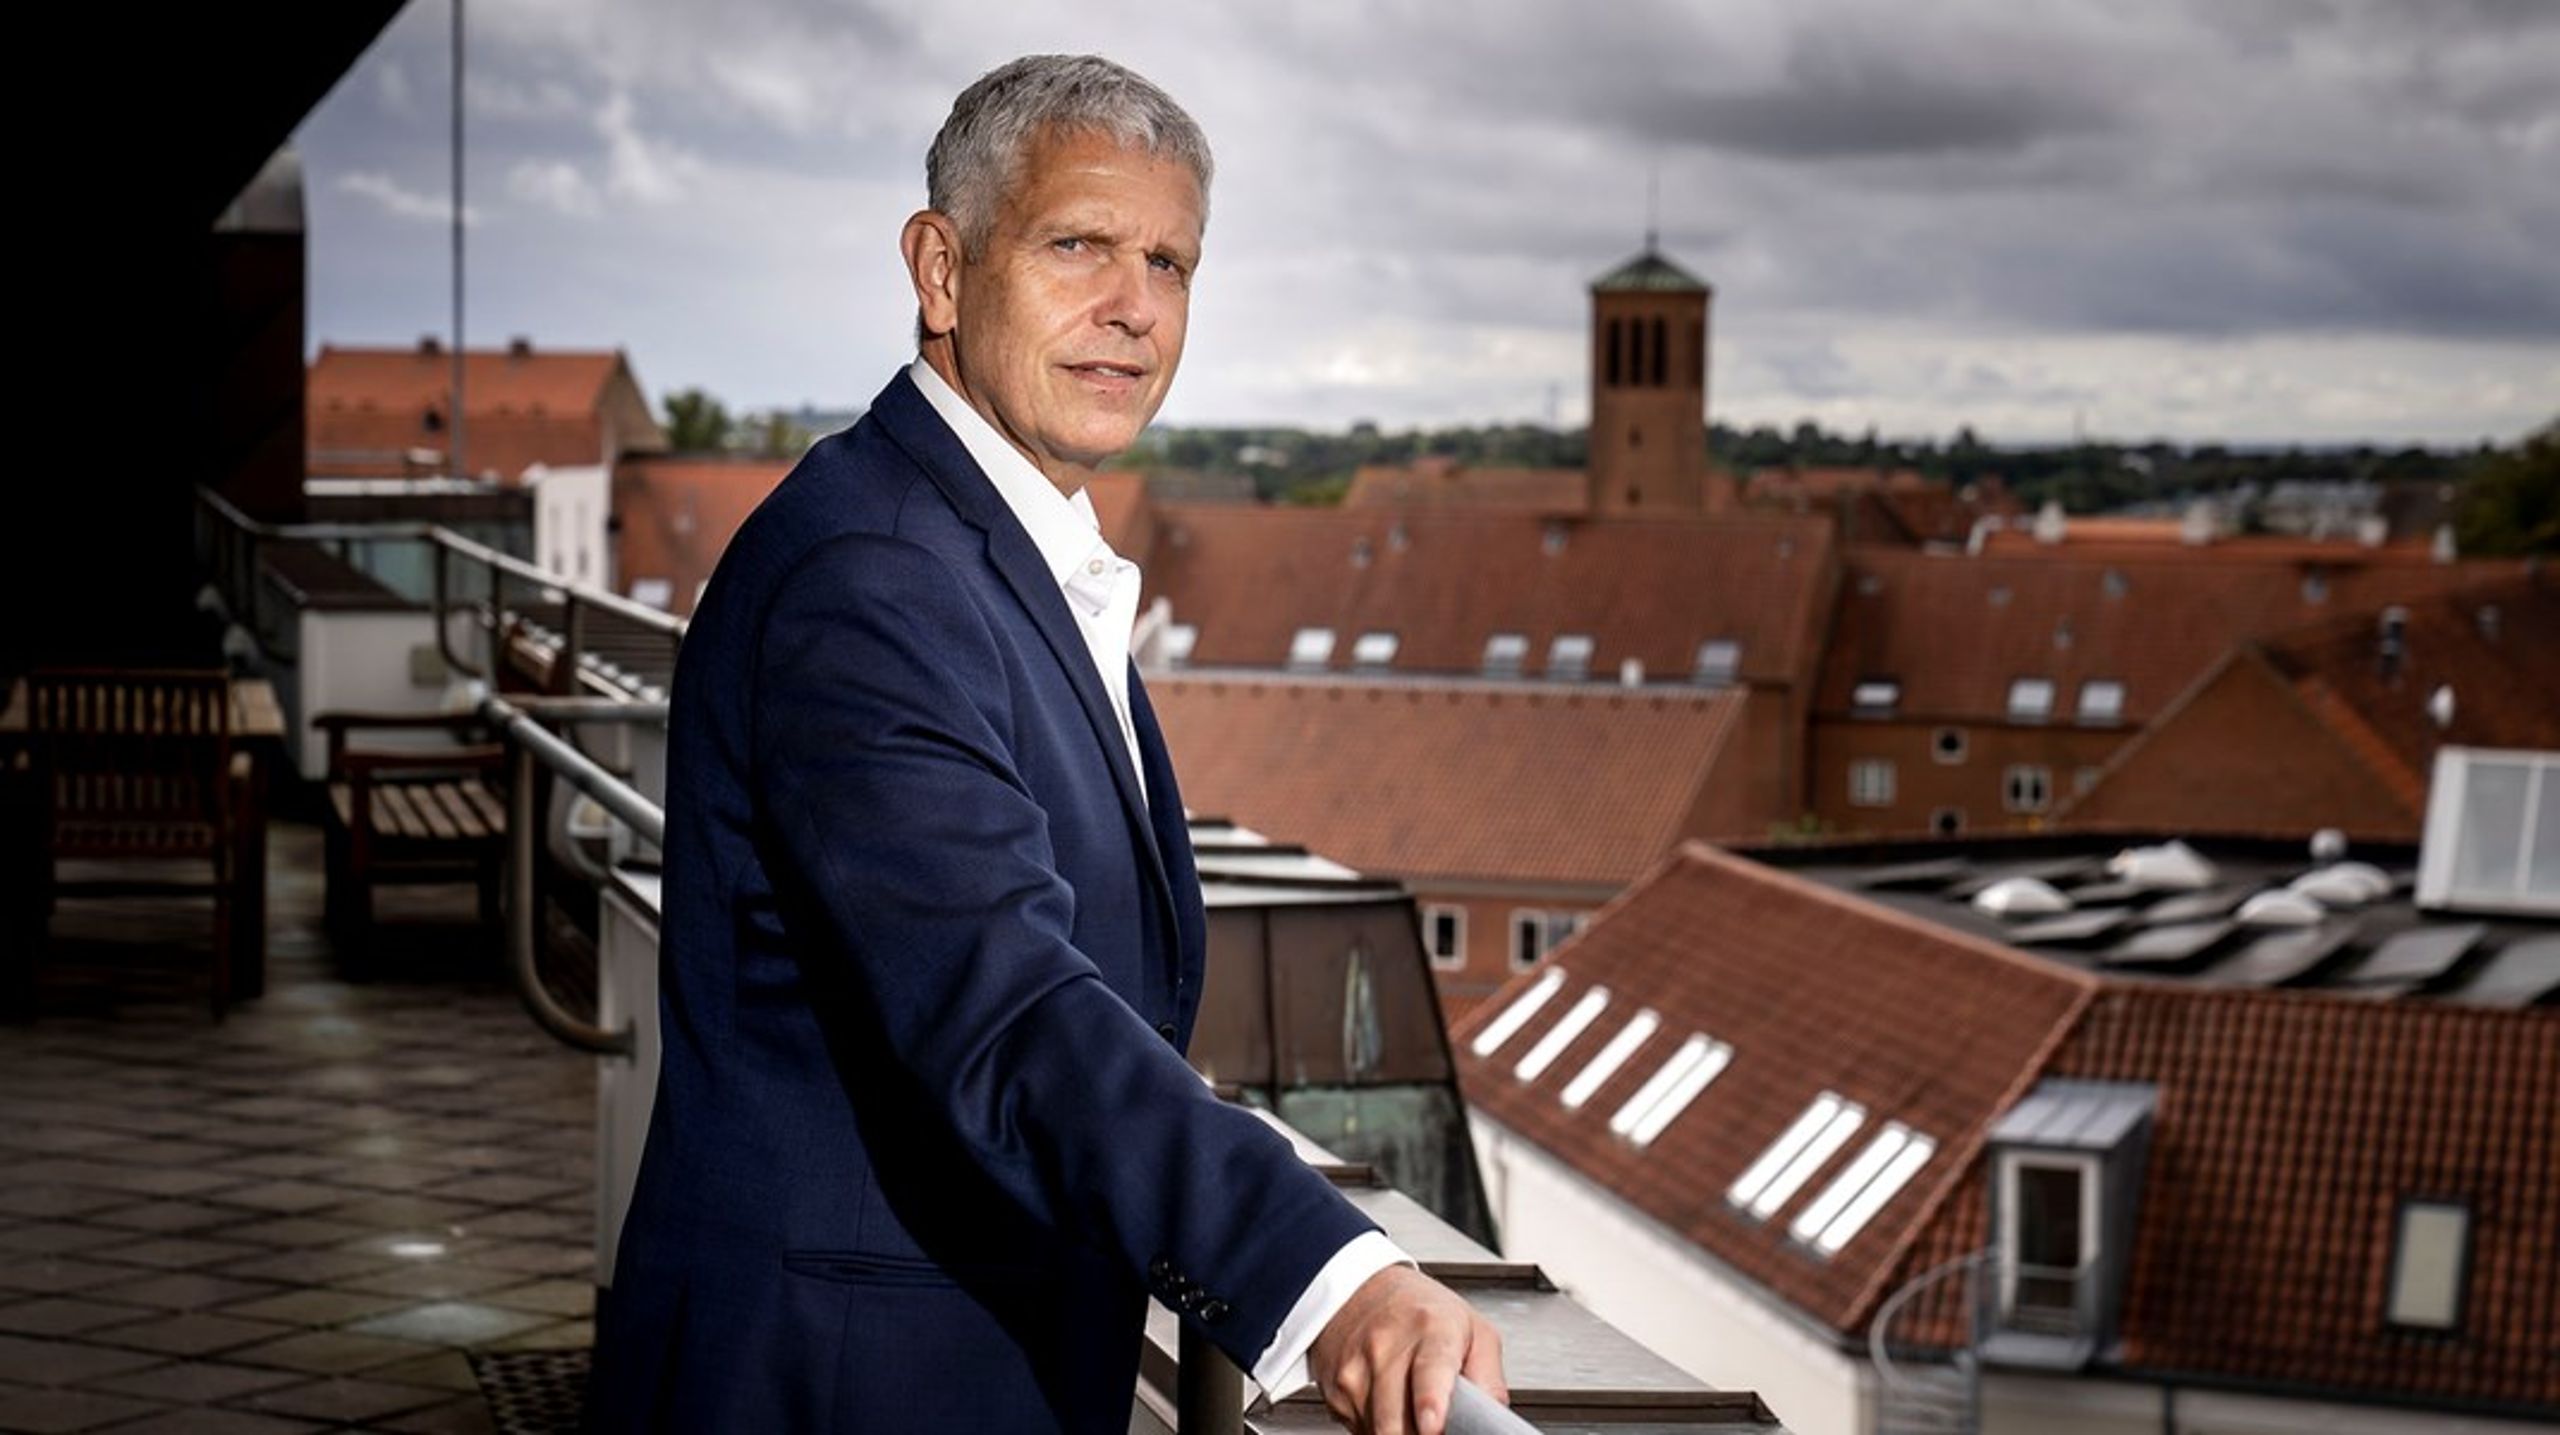 John Dyrby Paulsen var indtil nytår borgmester i Slagelse. Fra 22. februar er han&nbsp;ny direktør for Dansk e-Mobilitet.